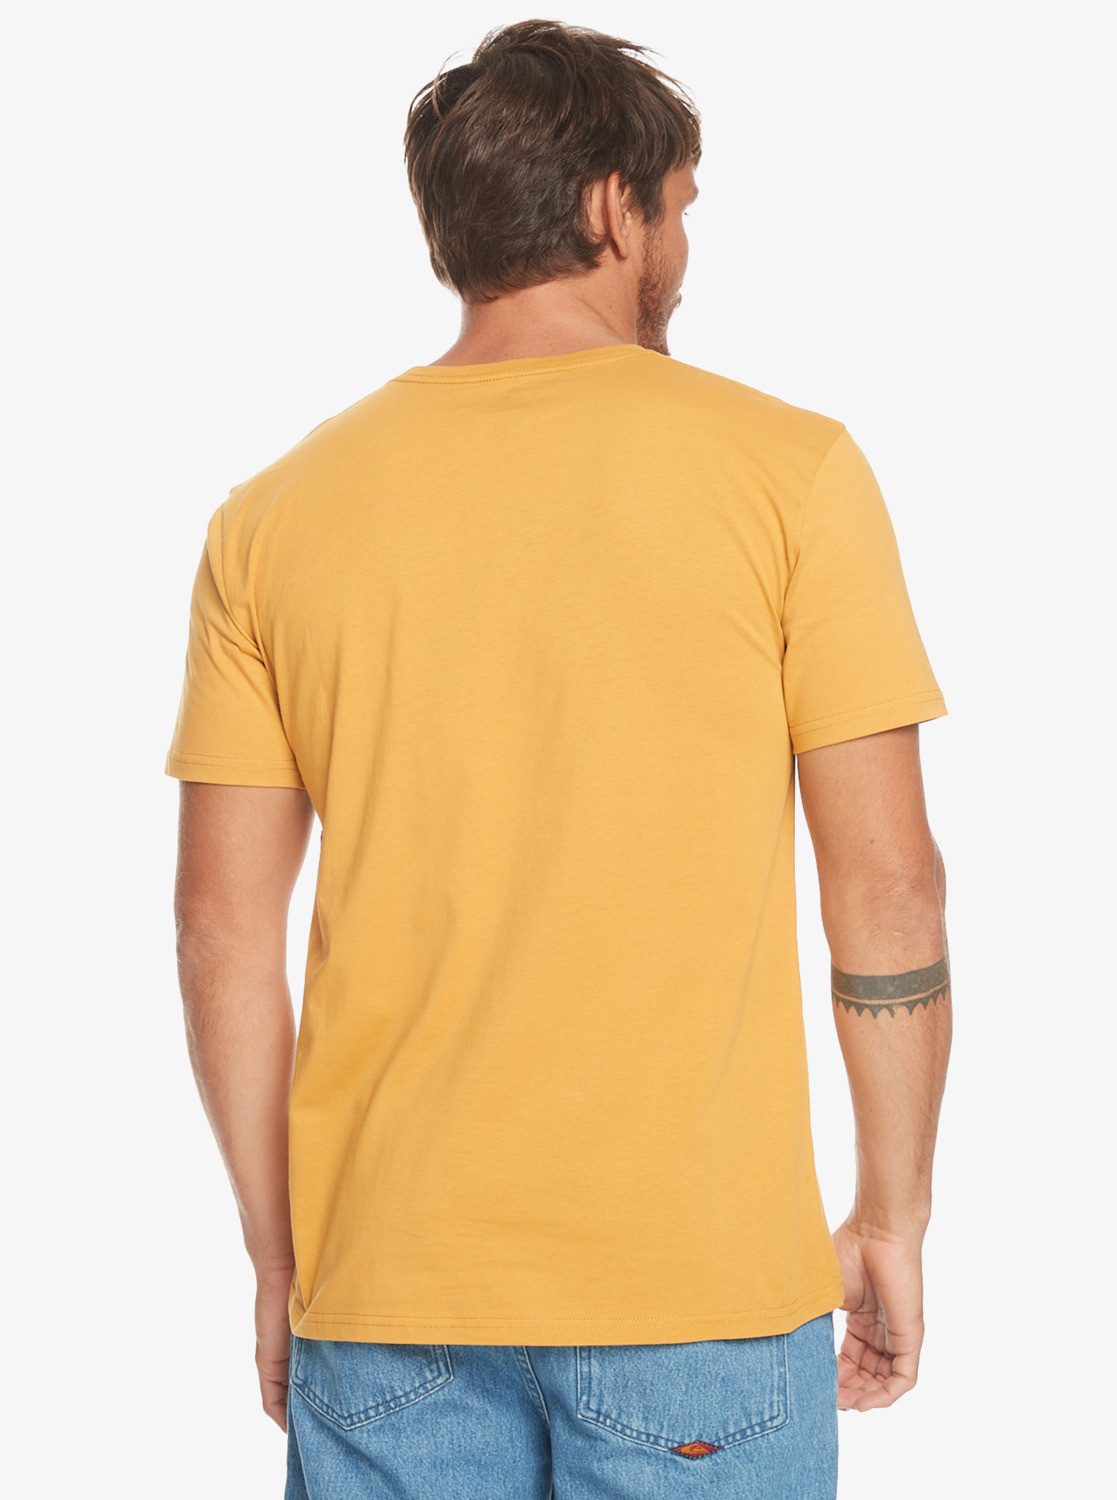 Quiksilver T-Shirt Gradient Line Mustard